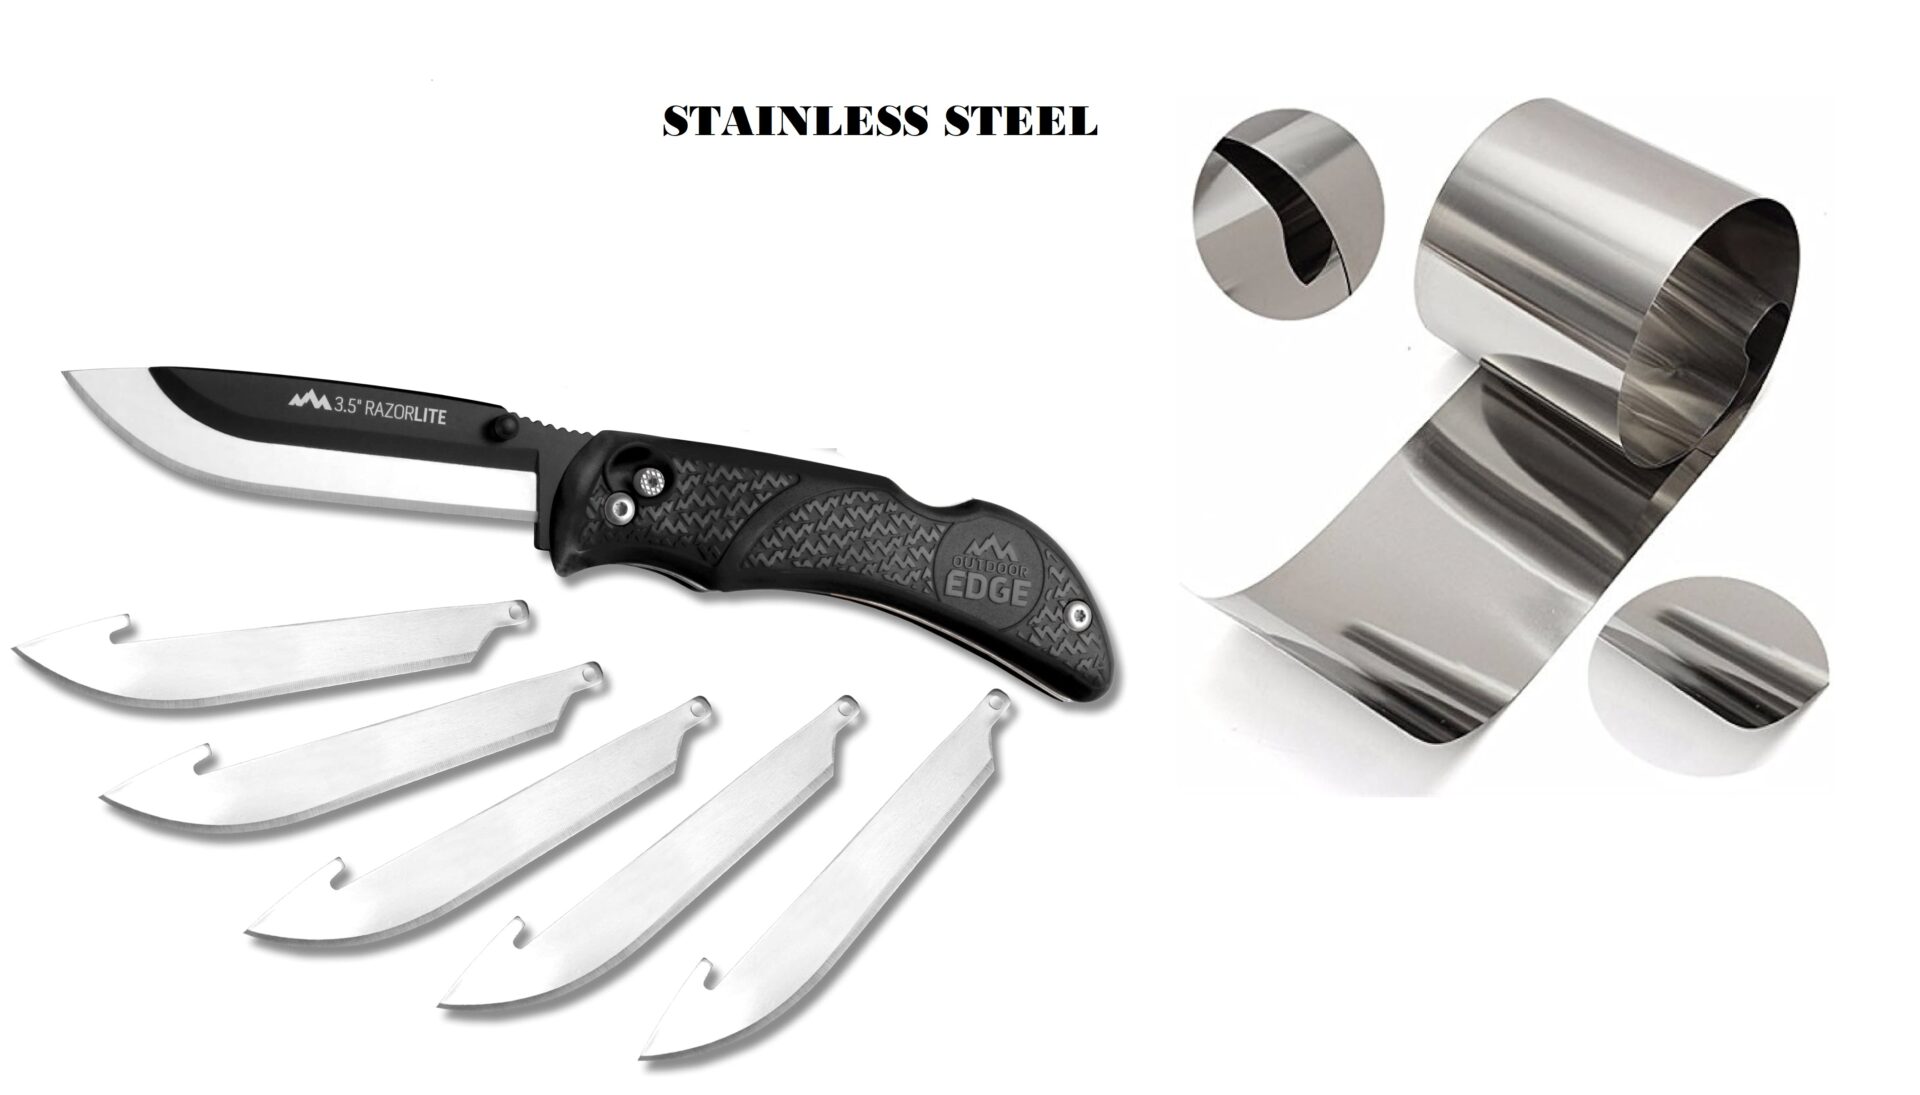 Migliori coltelli da arrosto, migliori coltelli per arrosto, coltello, lame, acciaio, costruzione e materiale della lama